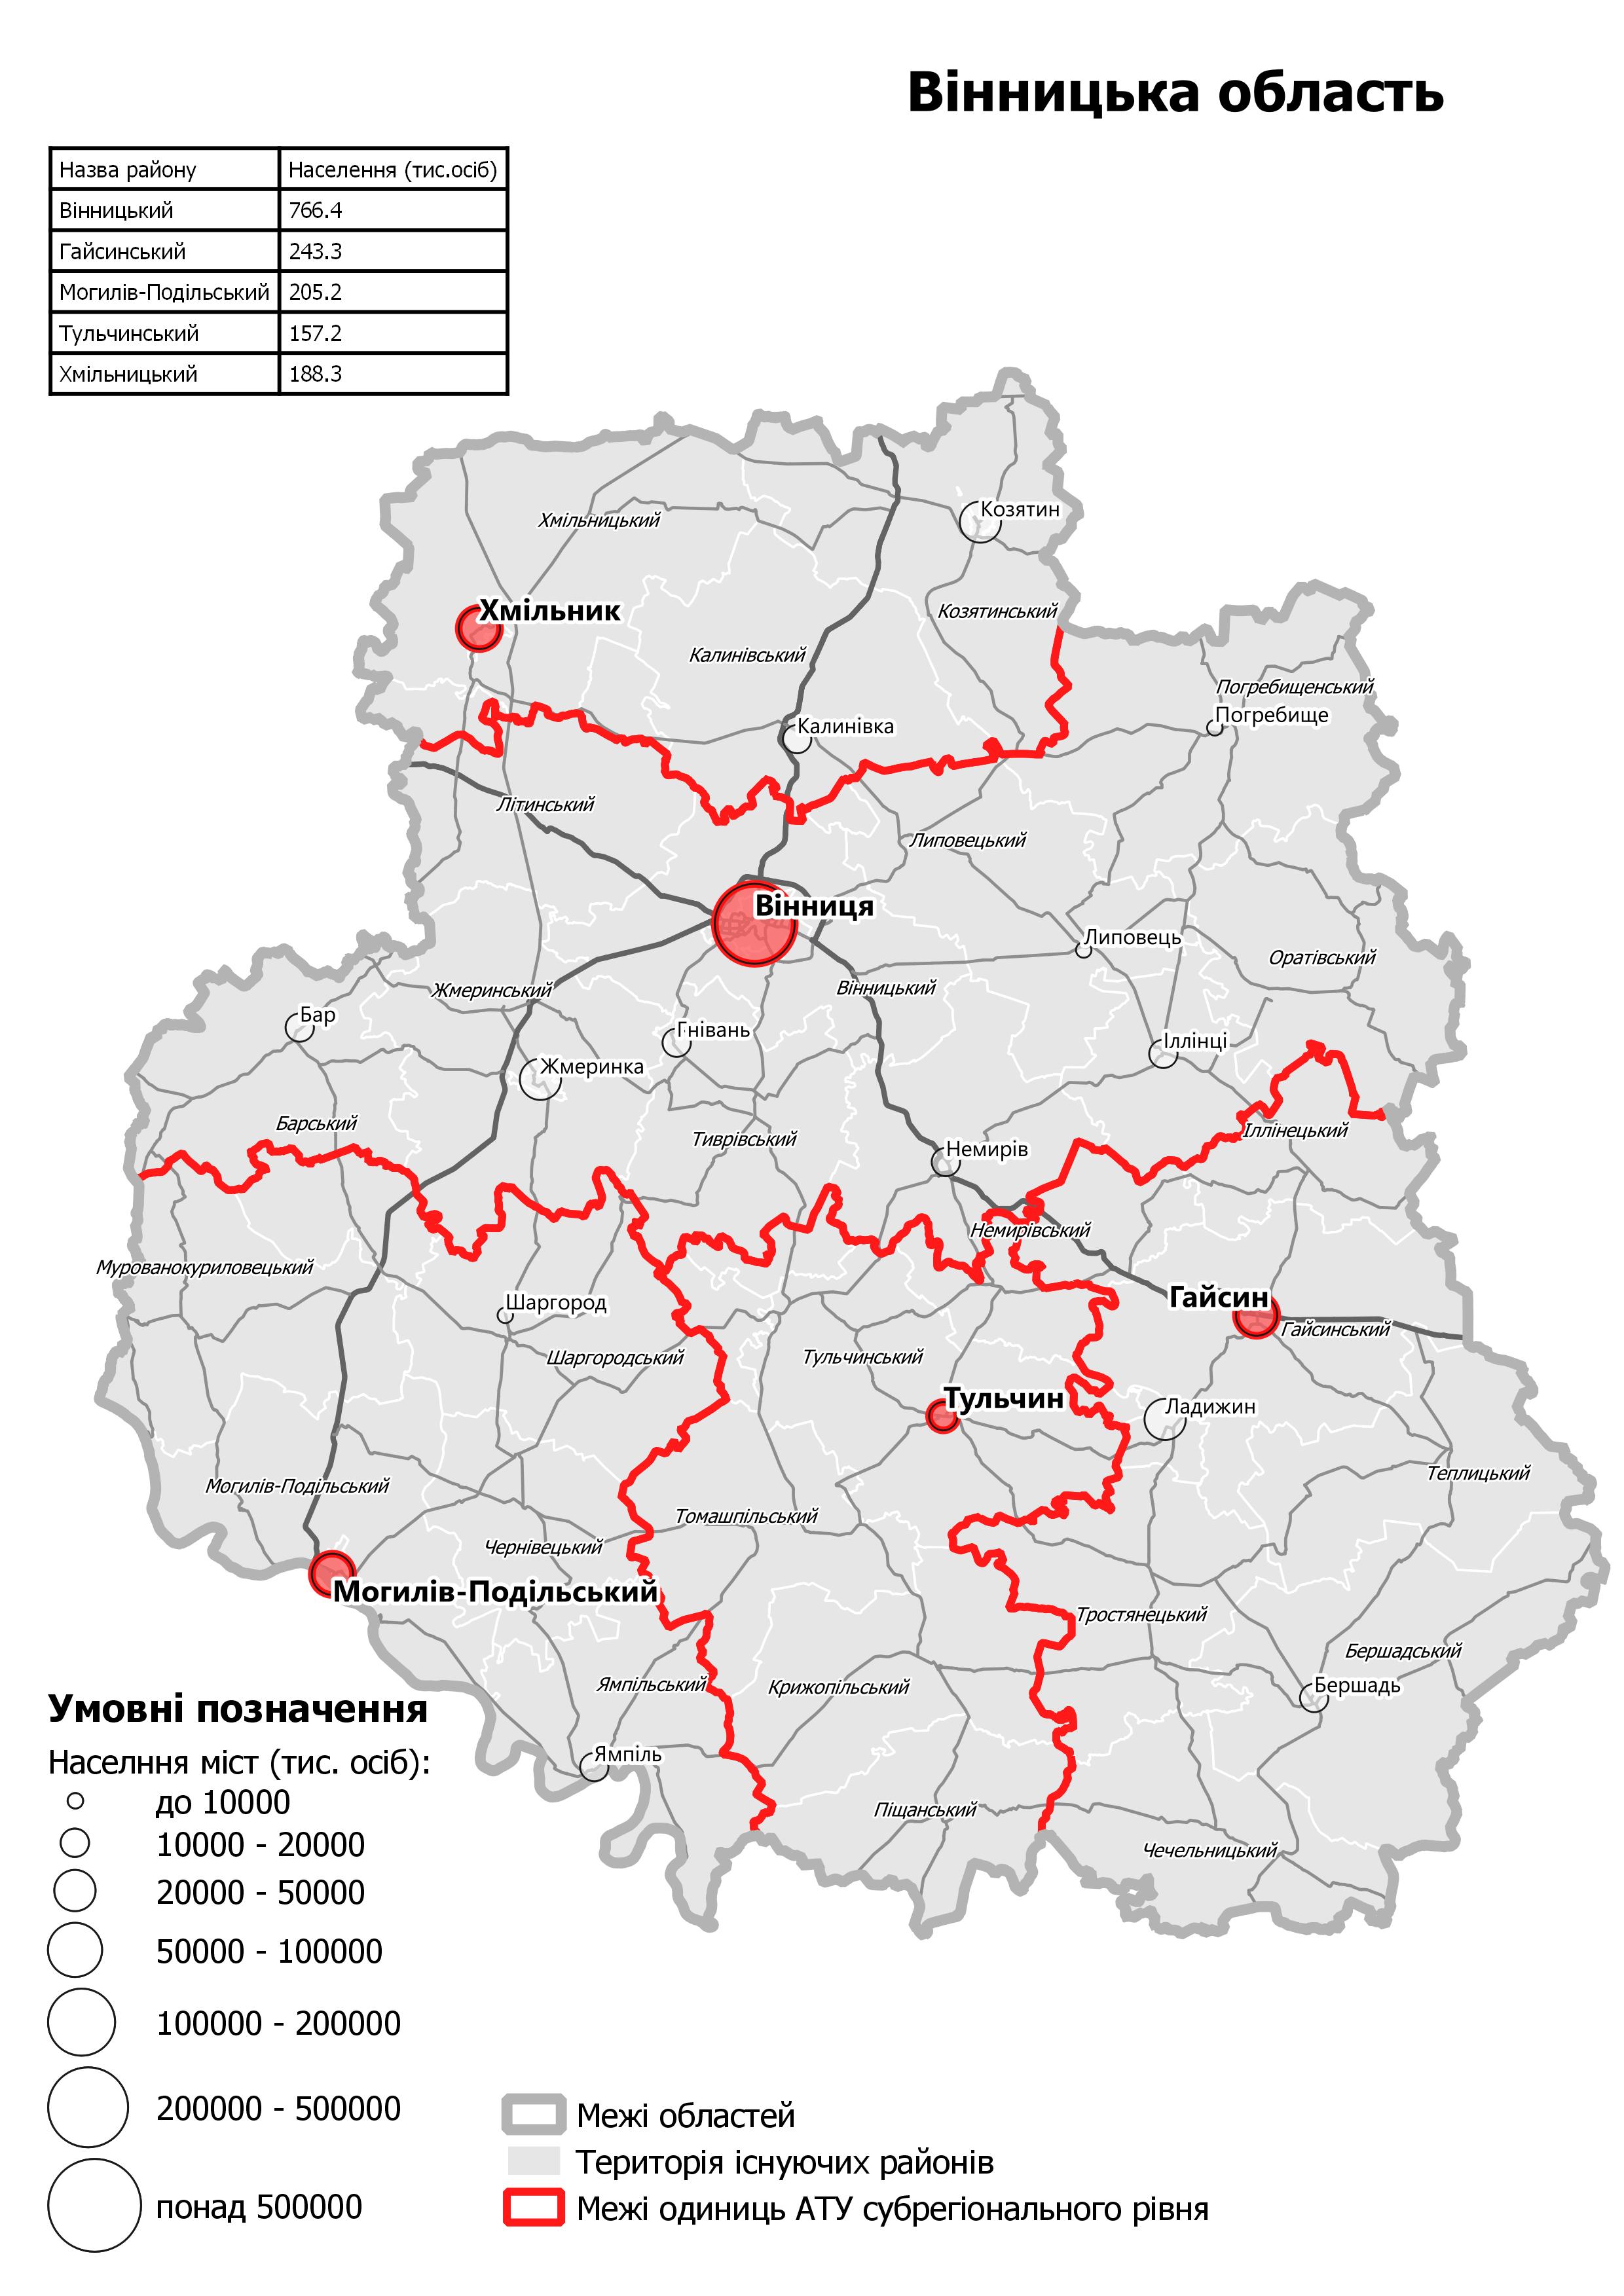 Карта нового деления на районы Винницкой области